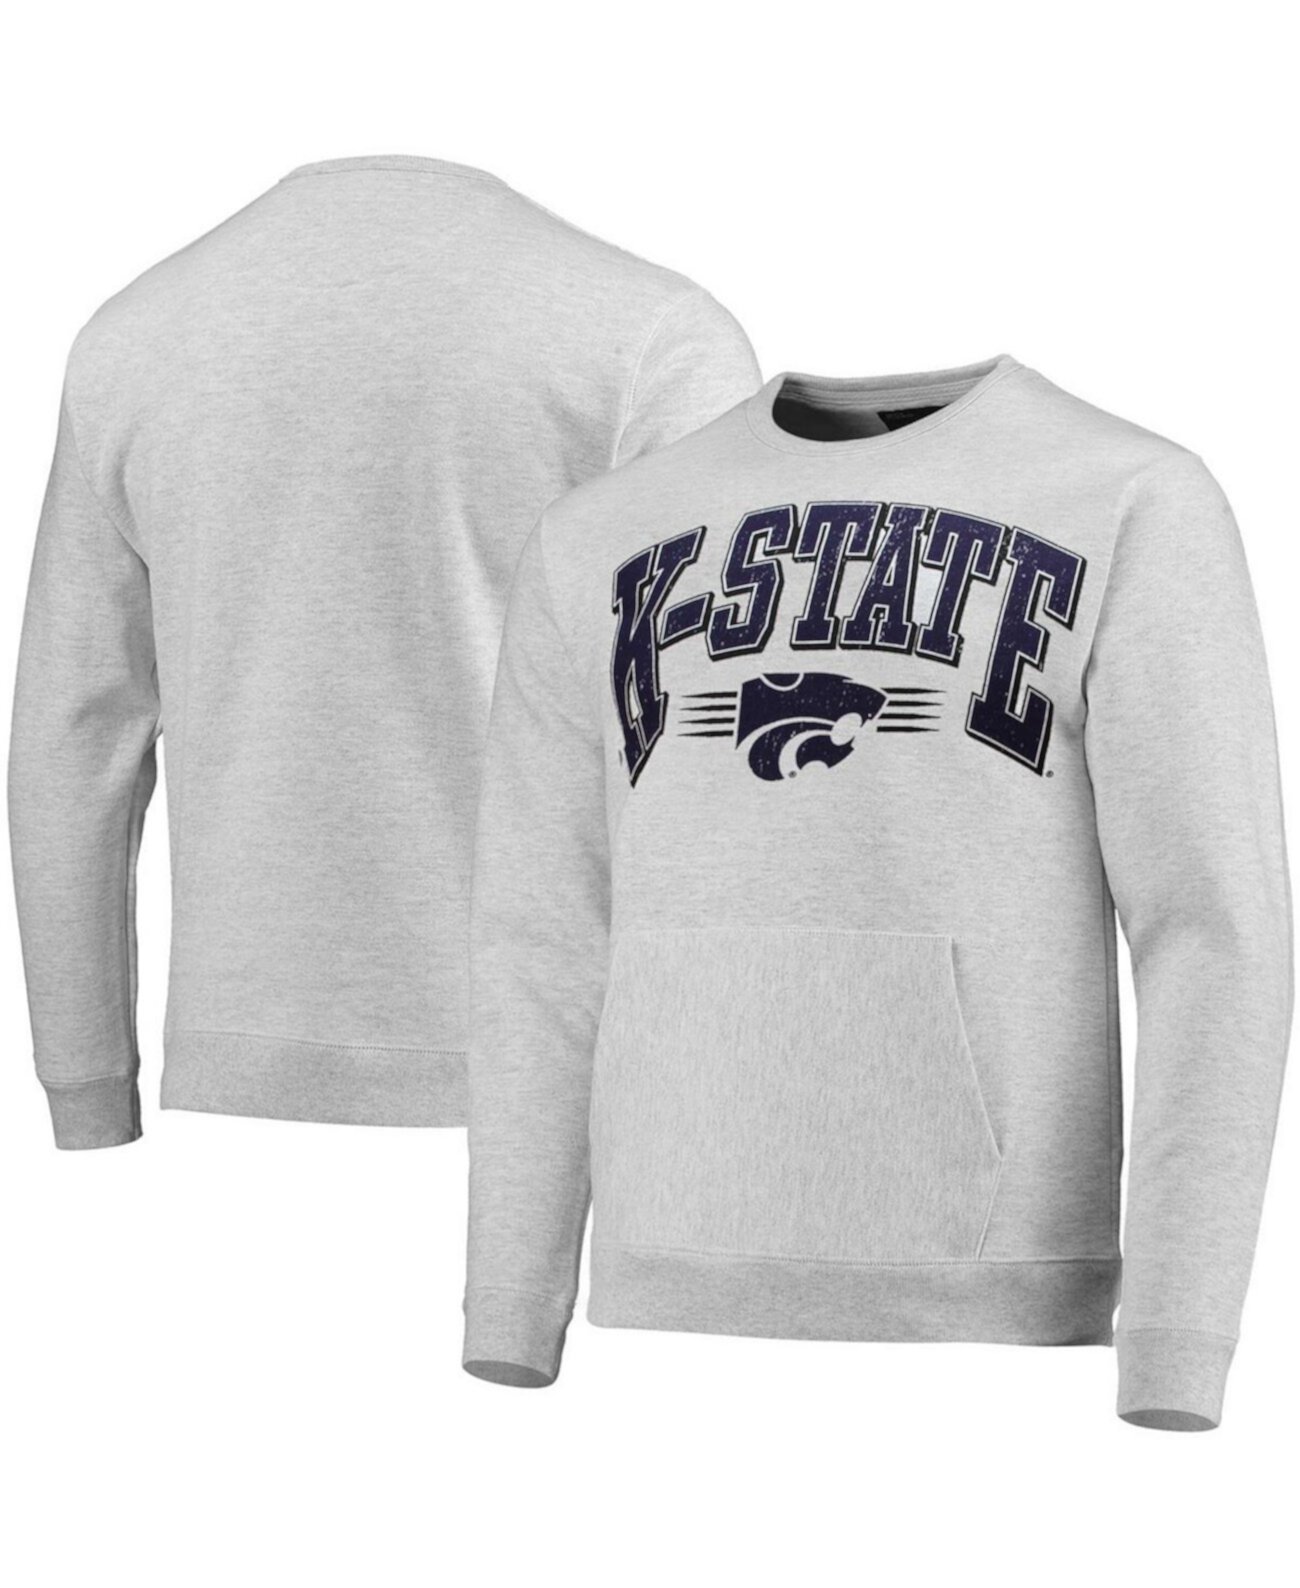 Мужская серая меланжевая толстовка с карманом Kansas State Wildcats для старшеклассников League Collegiate Wear